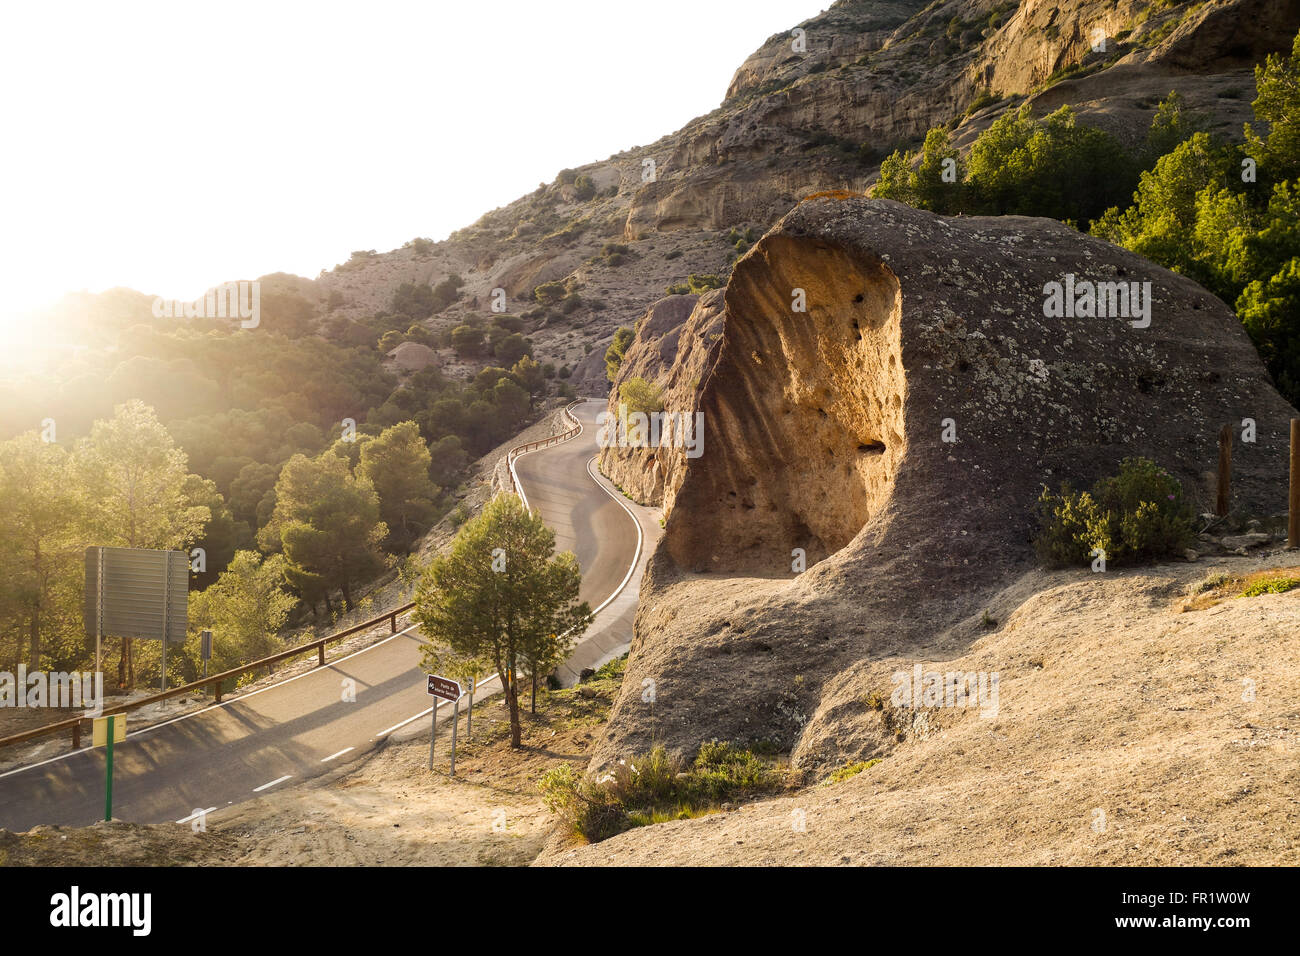 Scavata boulder, tafoni, tafone roccia calcarea formazione al parco naturale di Ardales e El Chorro, mountain range, Andalusia, Spagna. Foto Stock